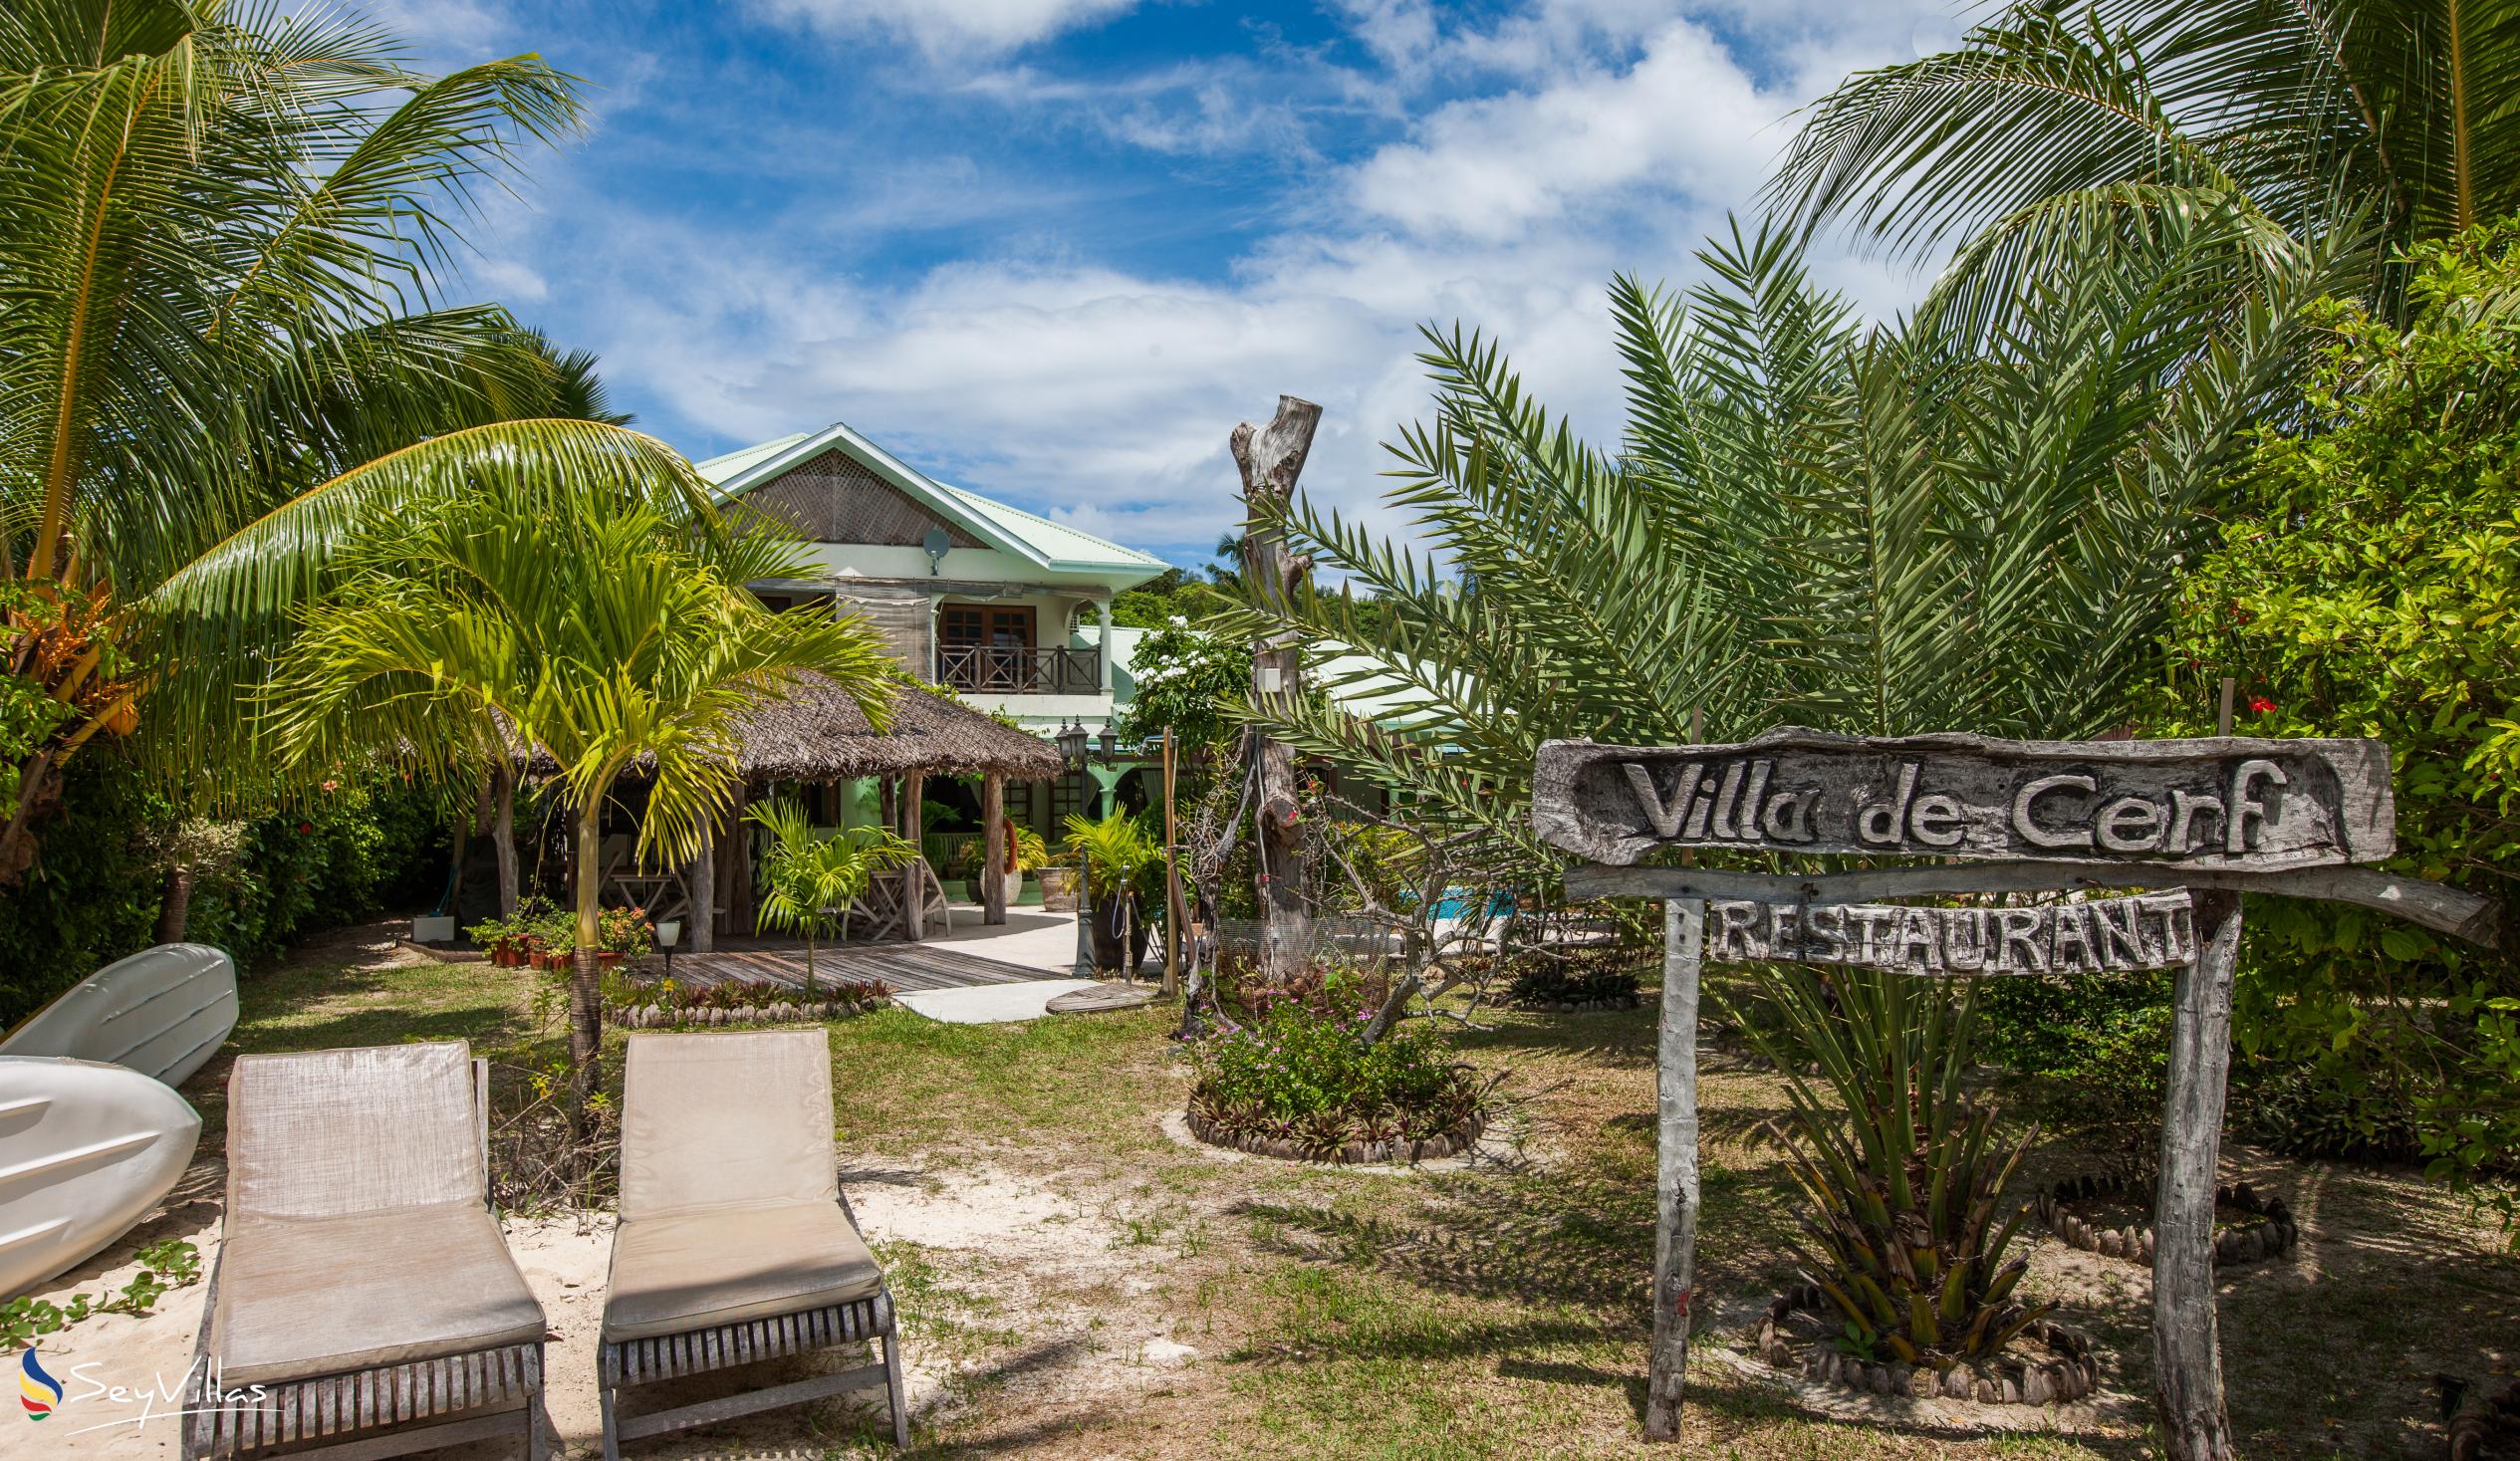 Foto 13: Villa de Cerf - Aussenbereich - Cerf Island (Seychellen)